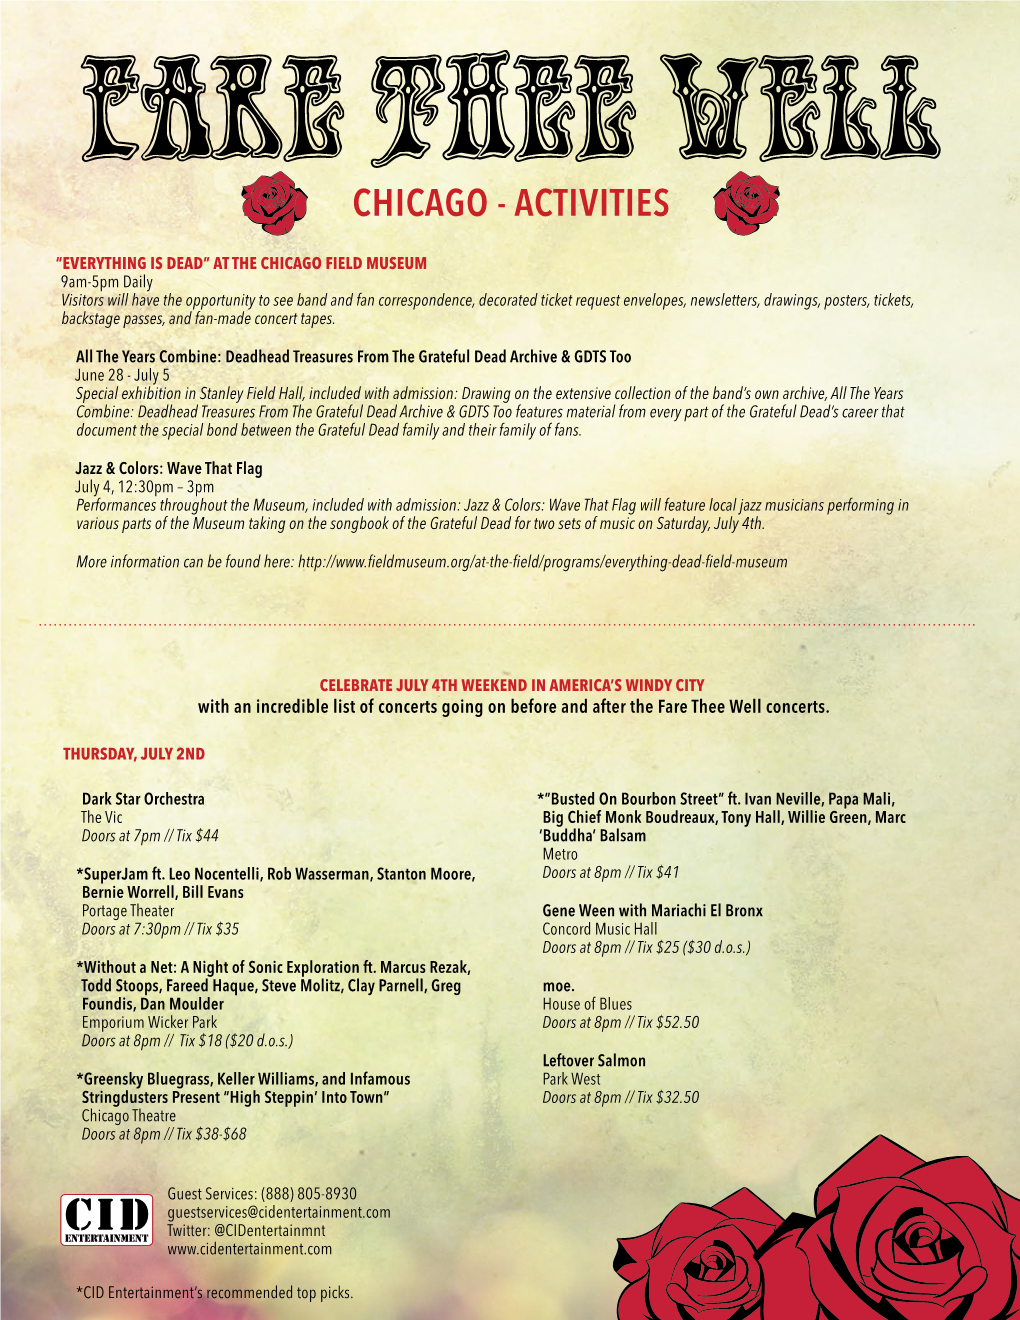 Chicago - Activities